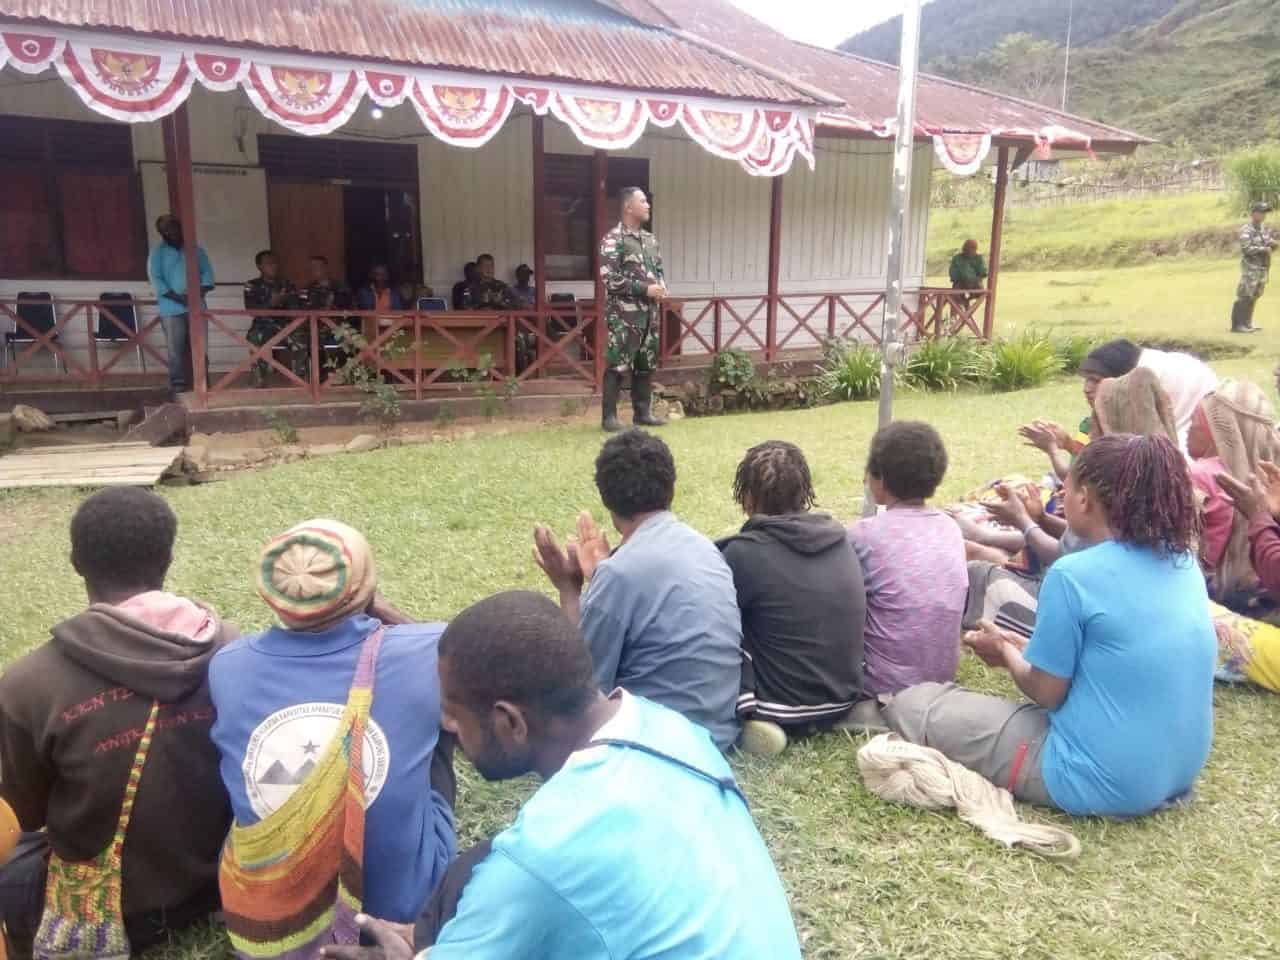 Ketua Ada Distrik Okbiba, Primus Tabuni : Bapak TNI Selalu Membantu Masyarakat